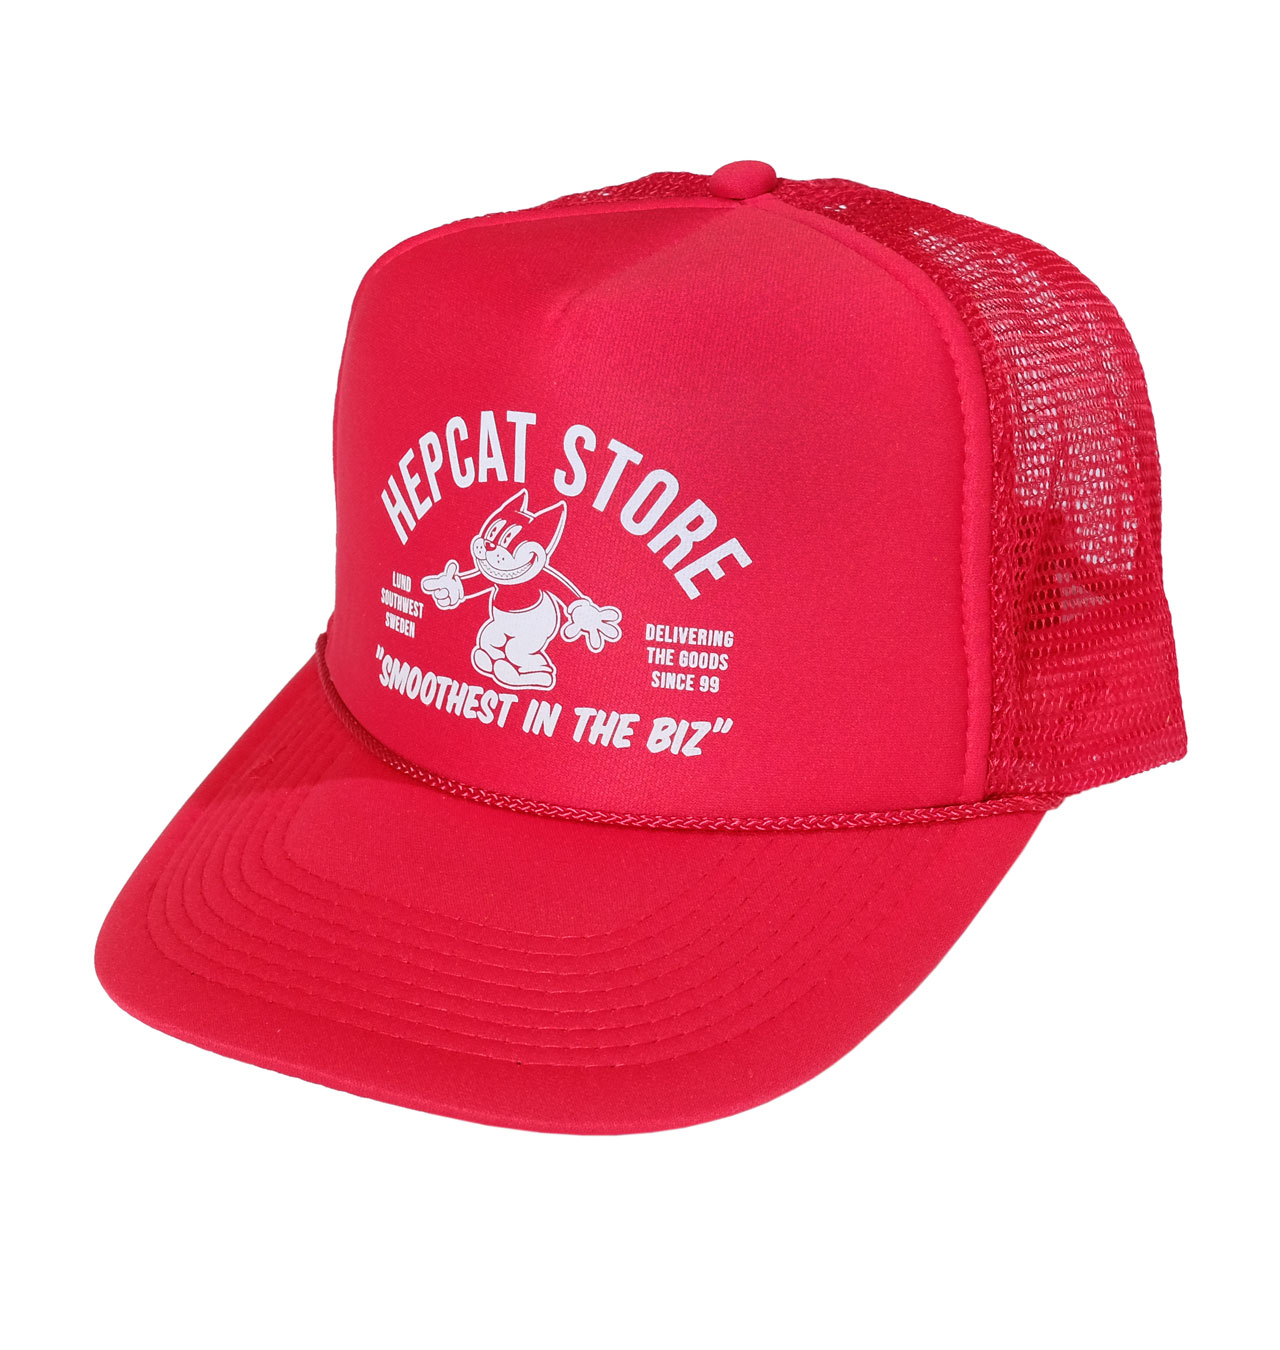 HepCat - Smoothest In The Bizz Trucker Cap - Red